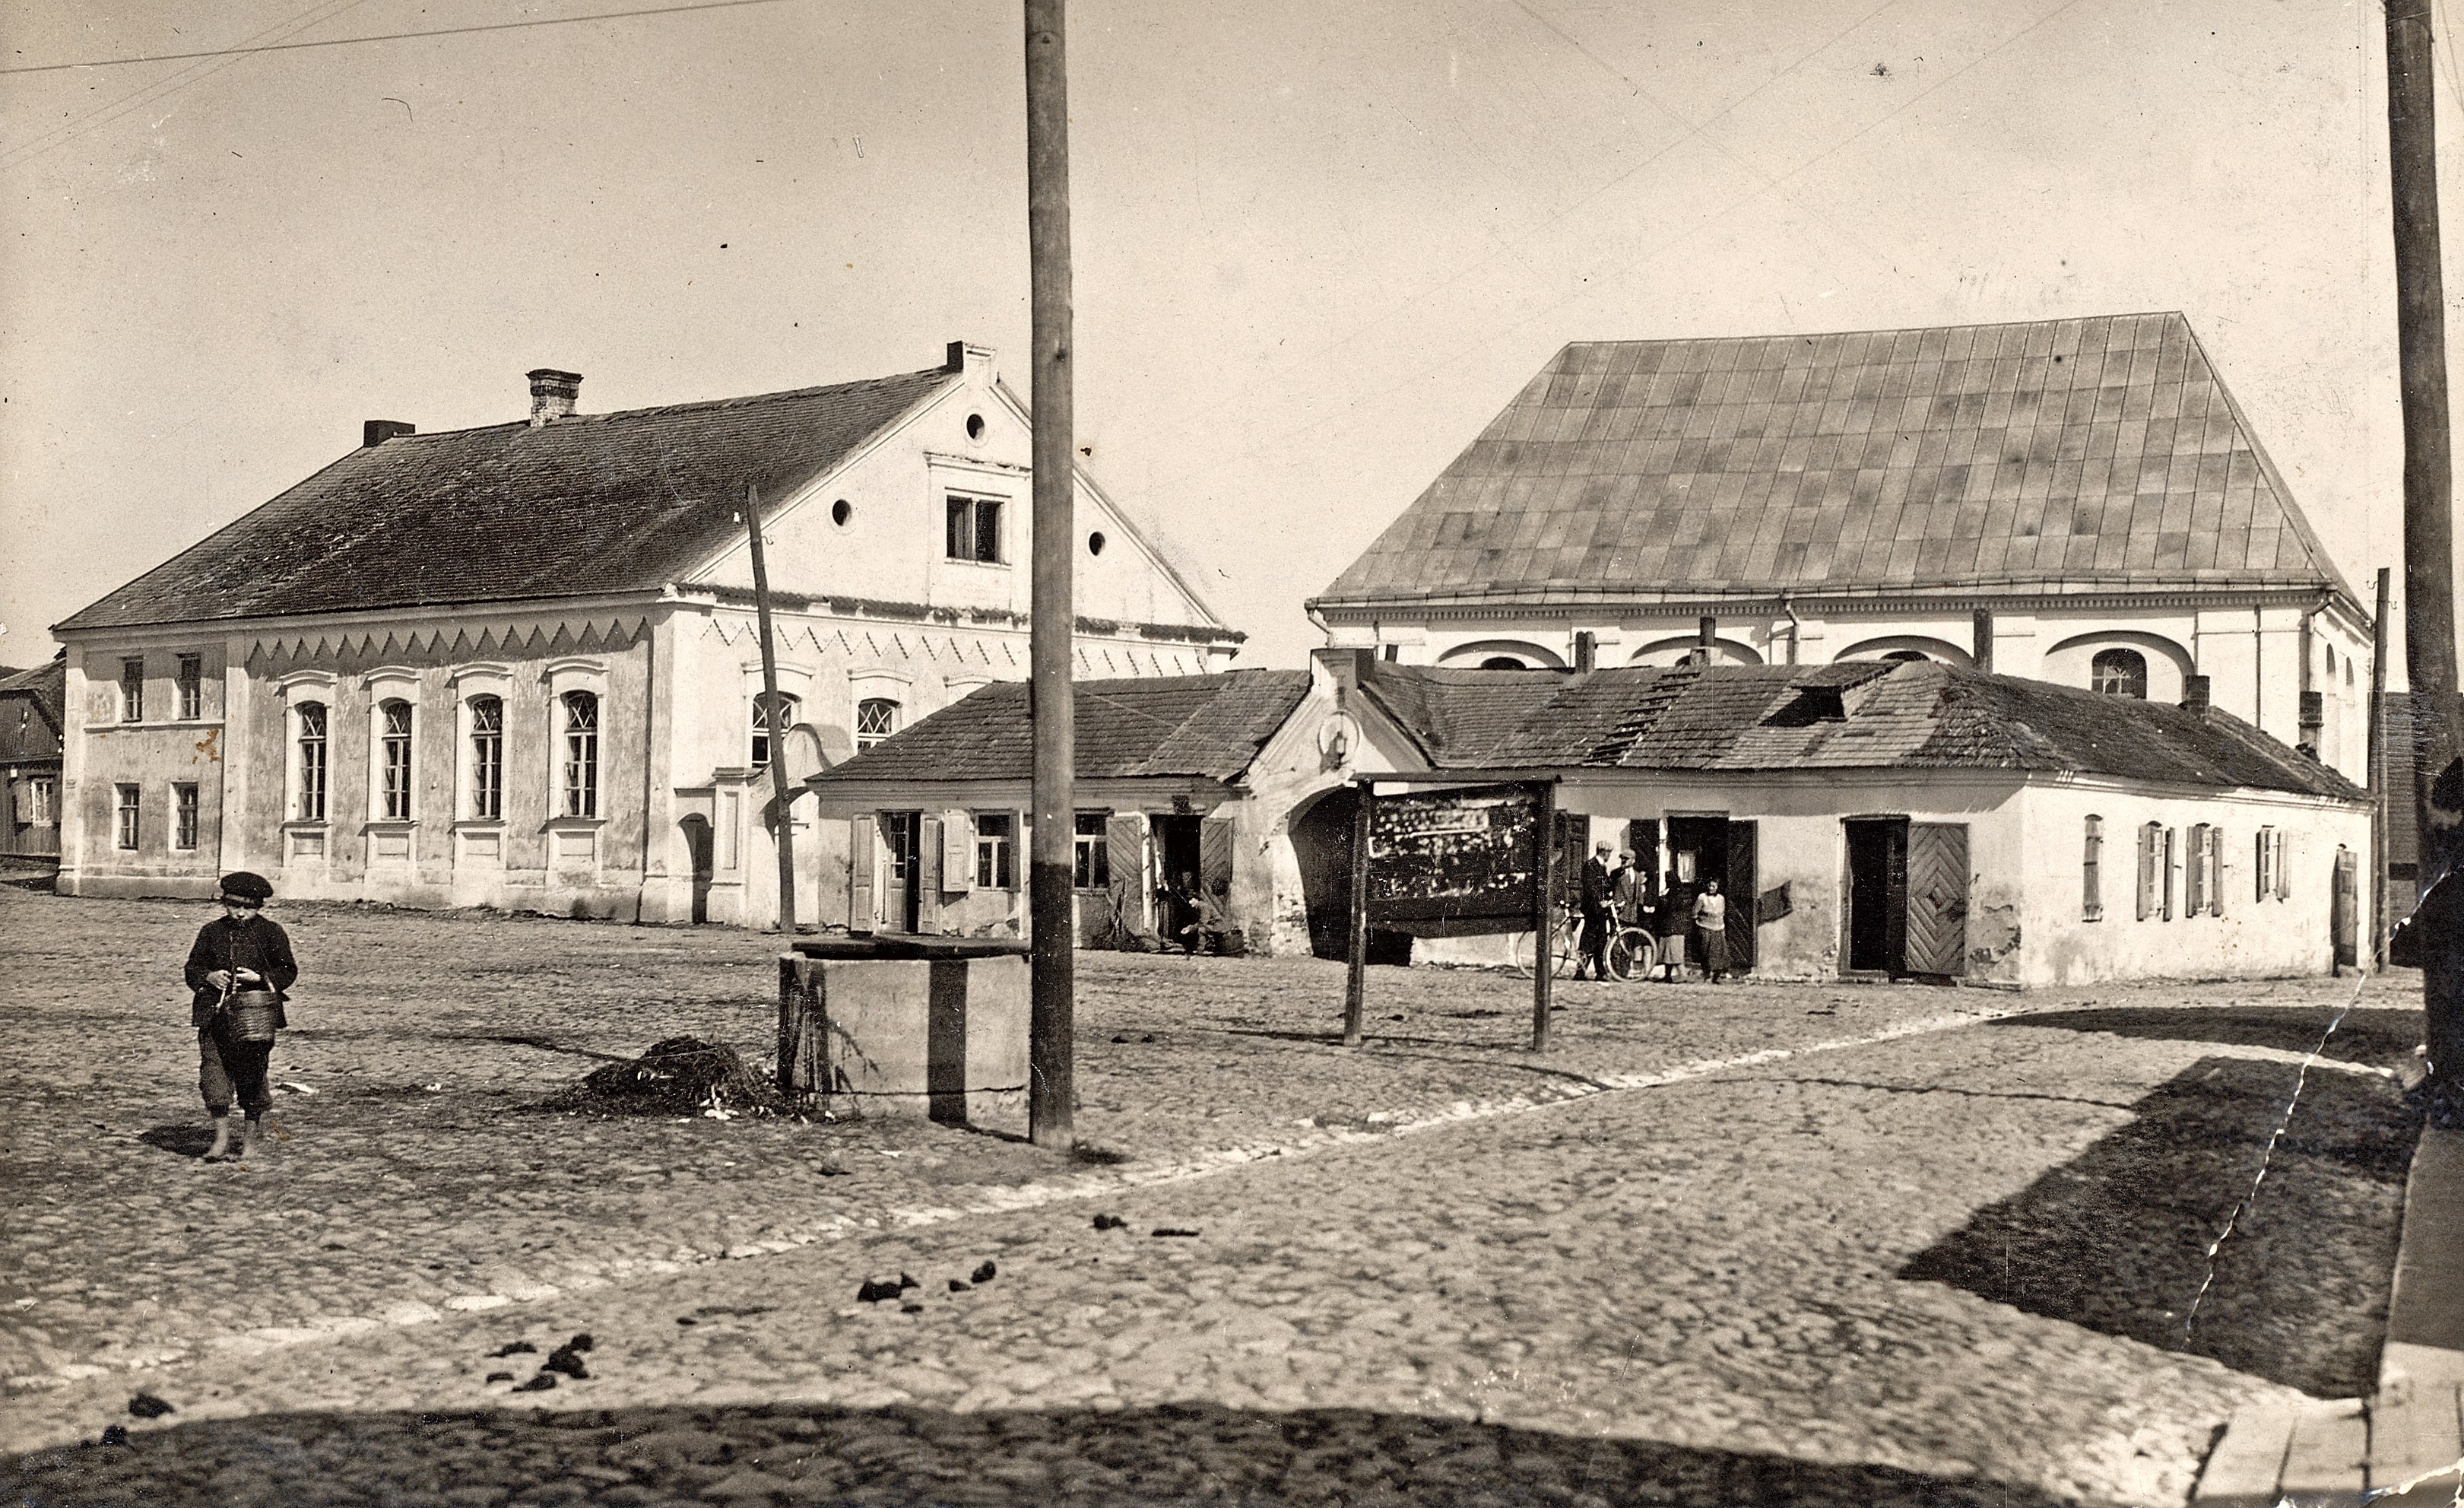 Kėdainių sinagogų kompleksas Sinagogų (dabar Senosios Rinkos) aikštėje, XX a. 4 deš. Priekyje stovėjusį šocheto - ritualinio skerdiko - namą 1942 m. nugriovė naciai